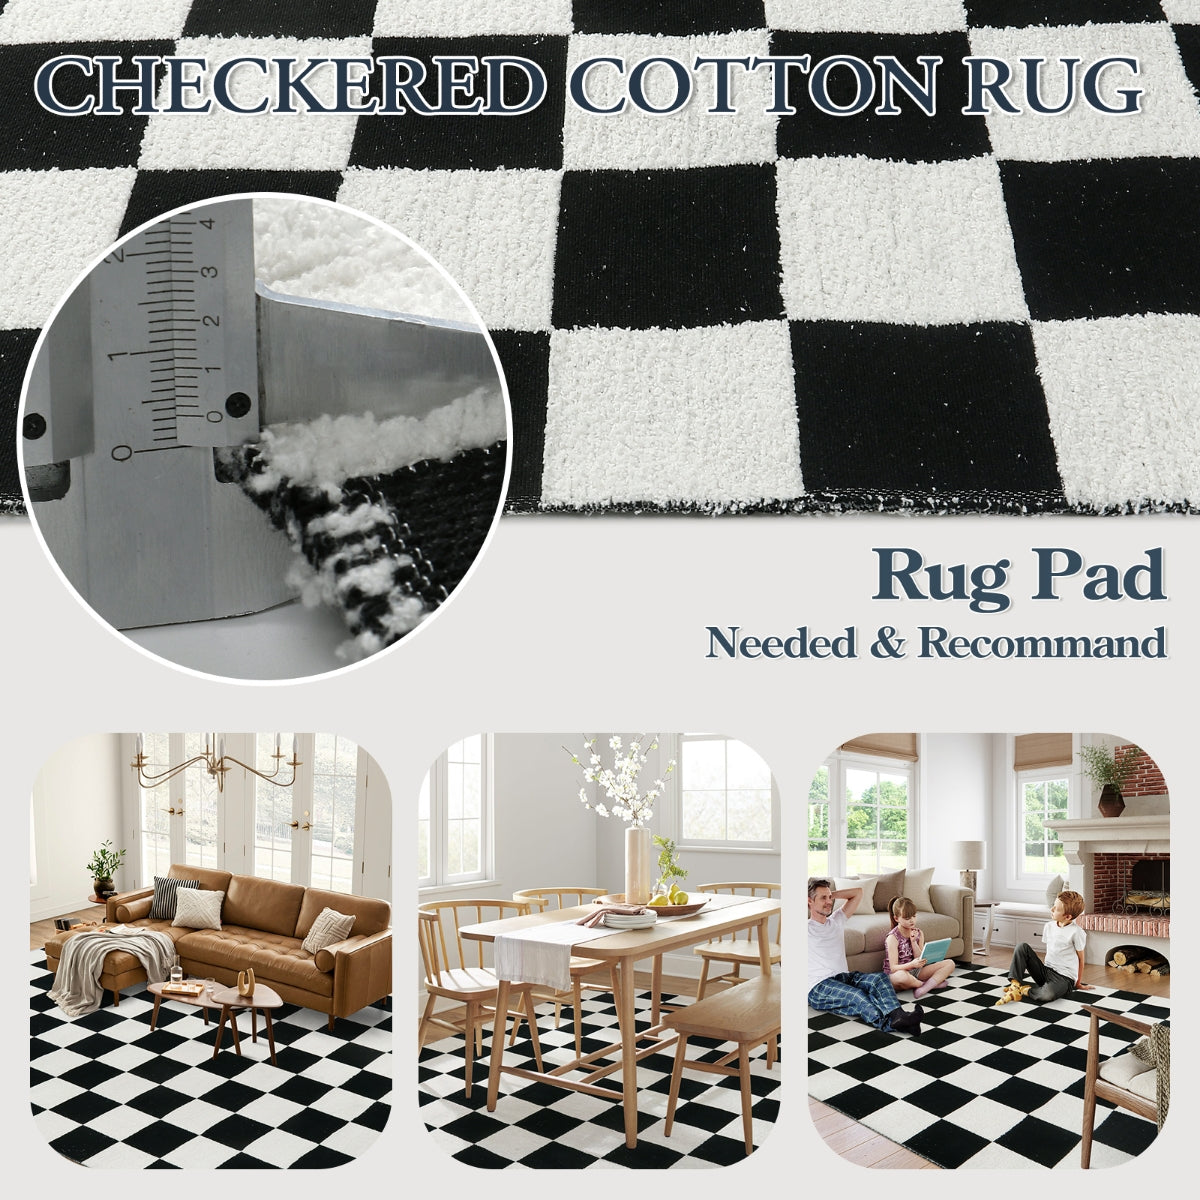 checkered runner rug